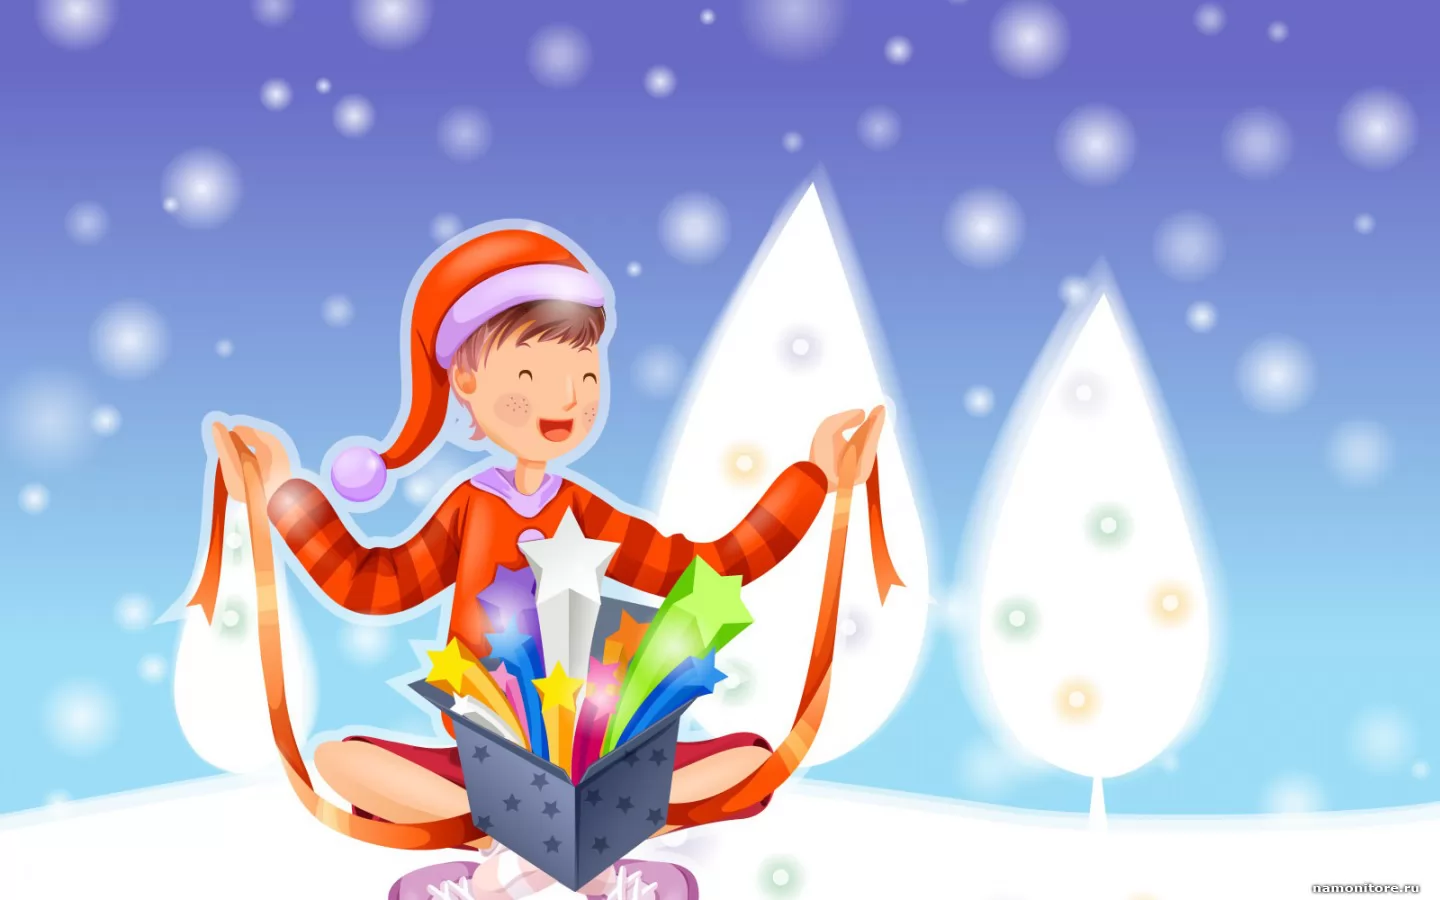 Звезды в подарок, зима, Новый год, подарки, праздники, рисованное, синее х